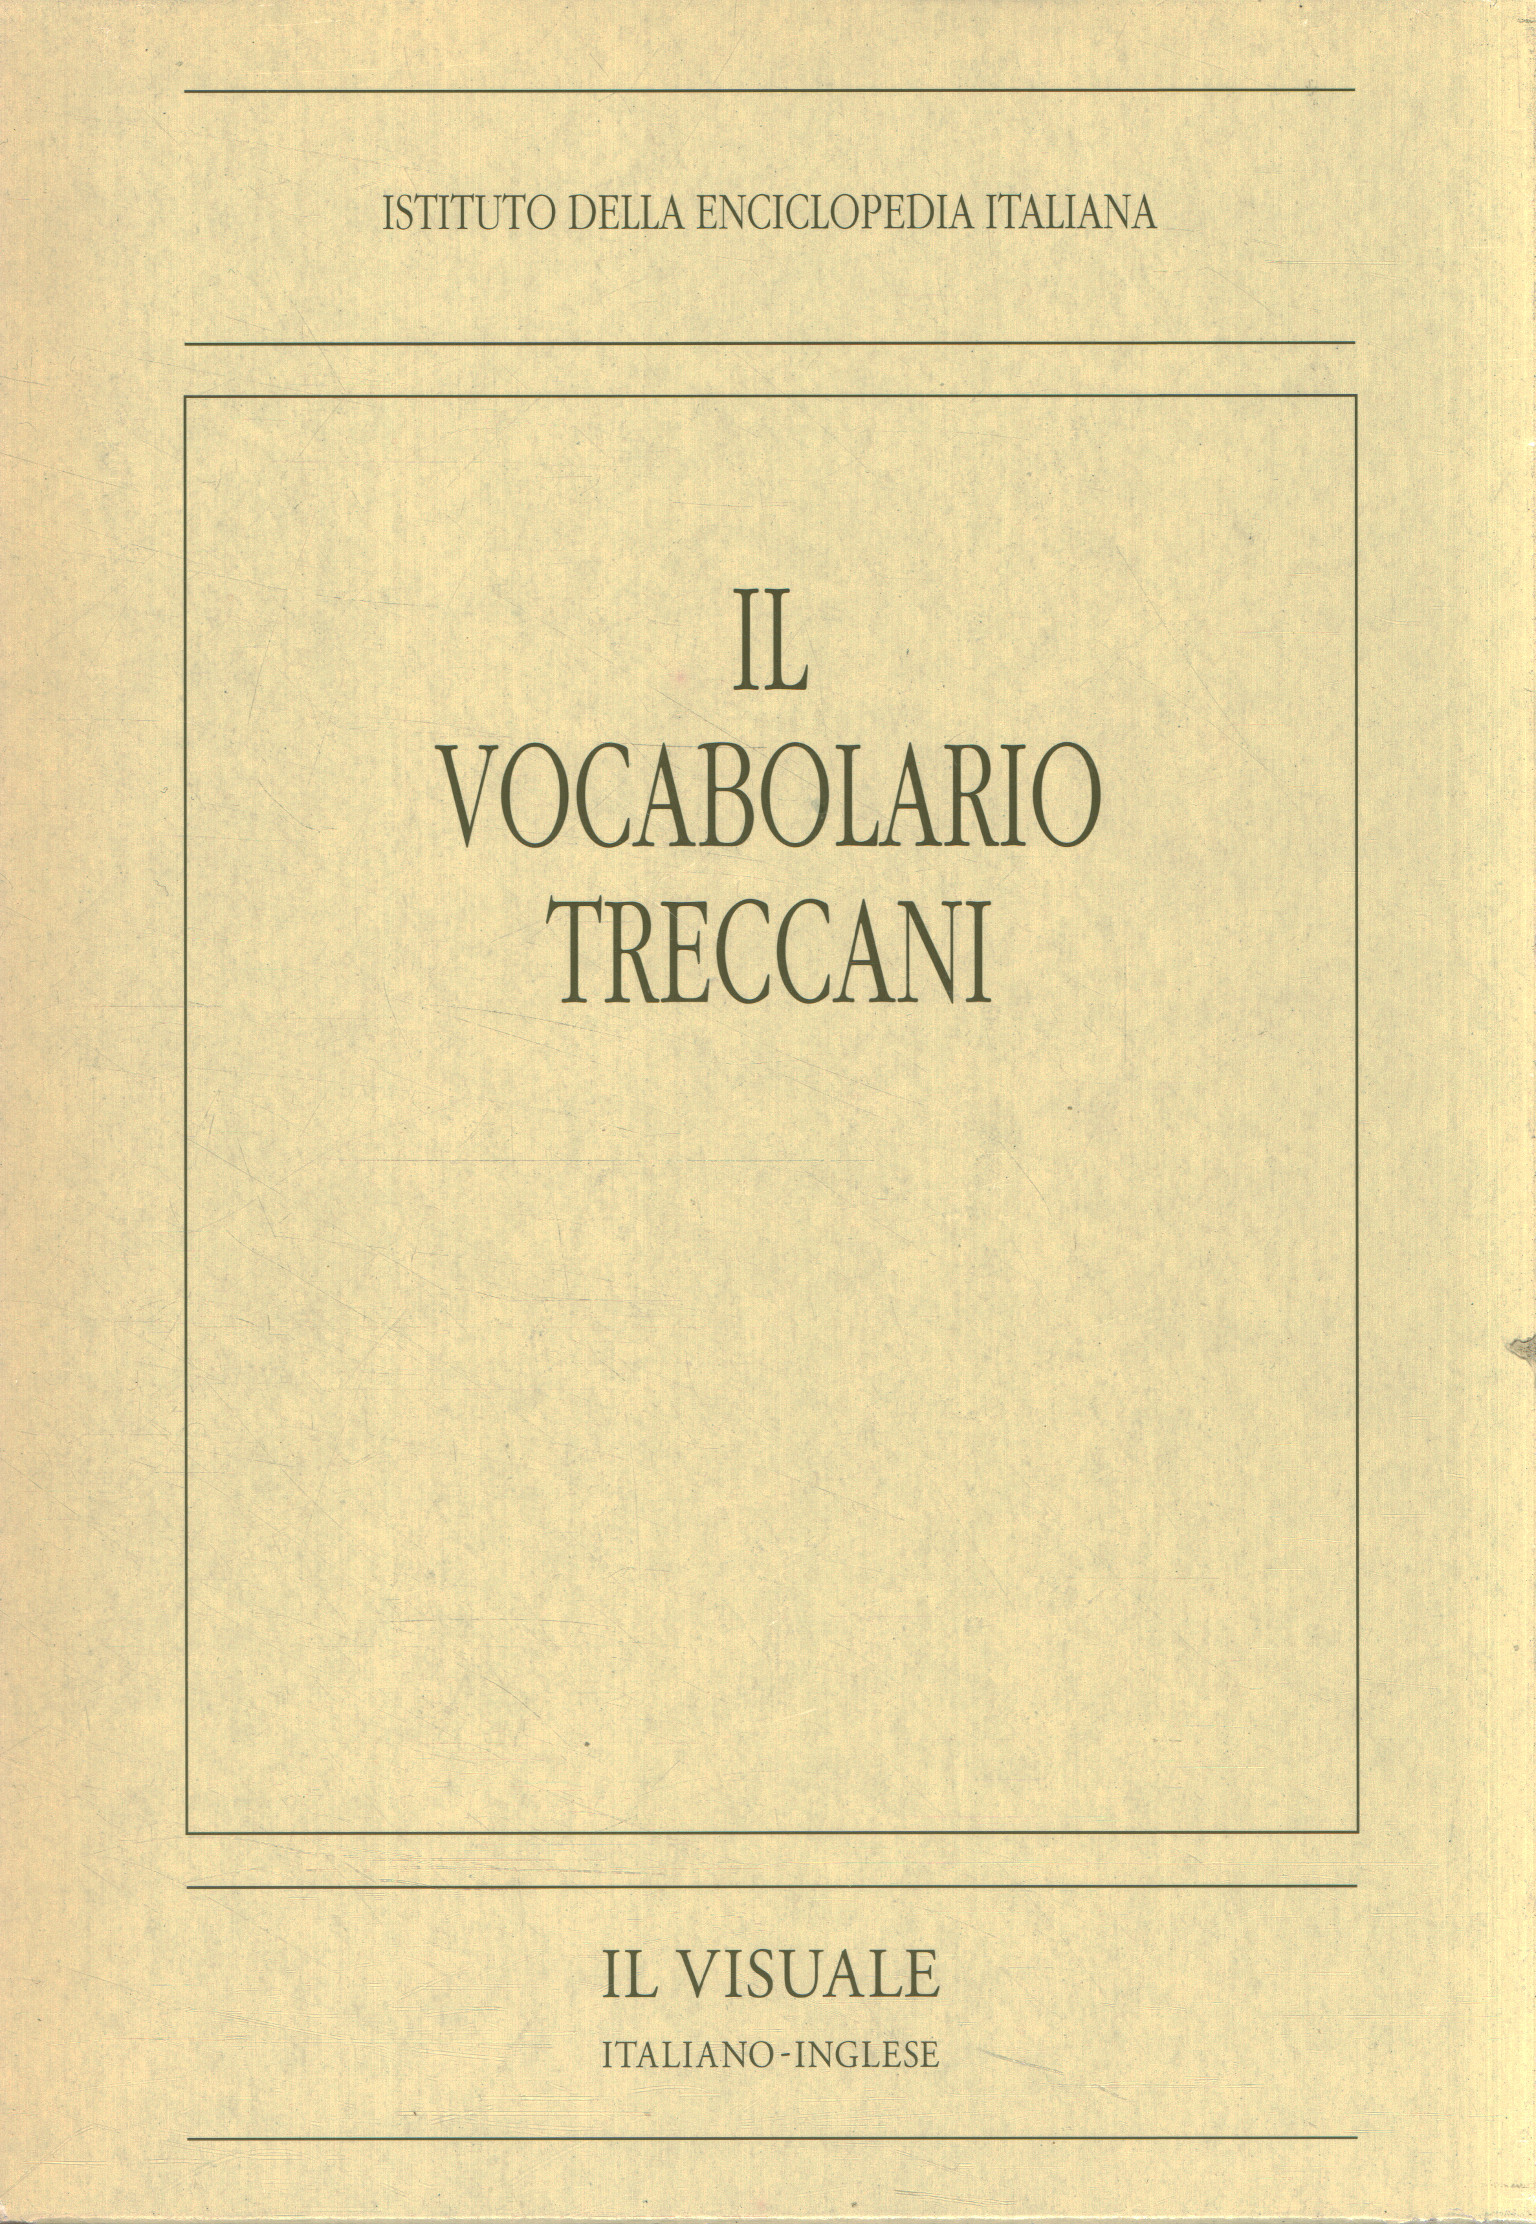 The Treccani vocabulary. The ital